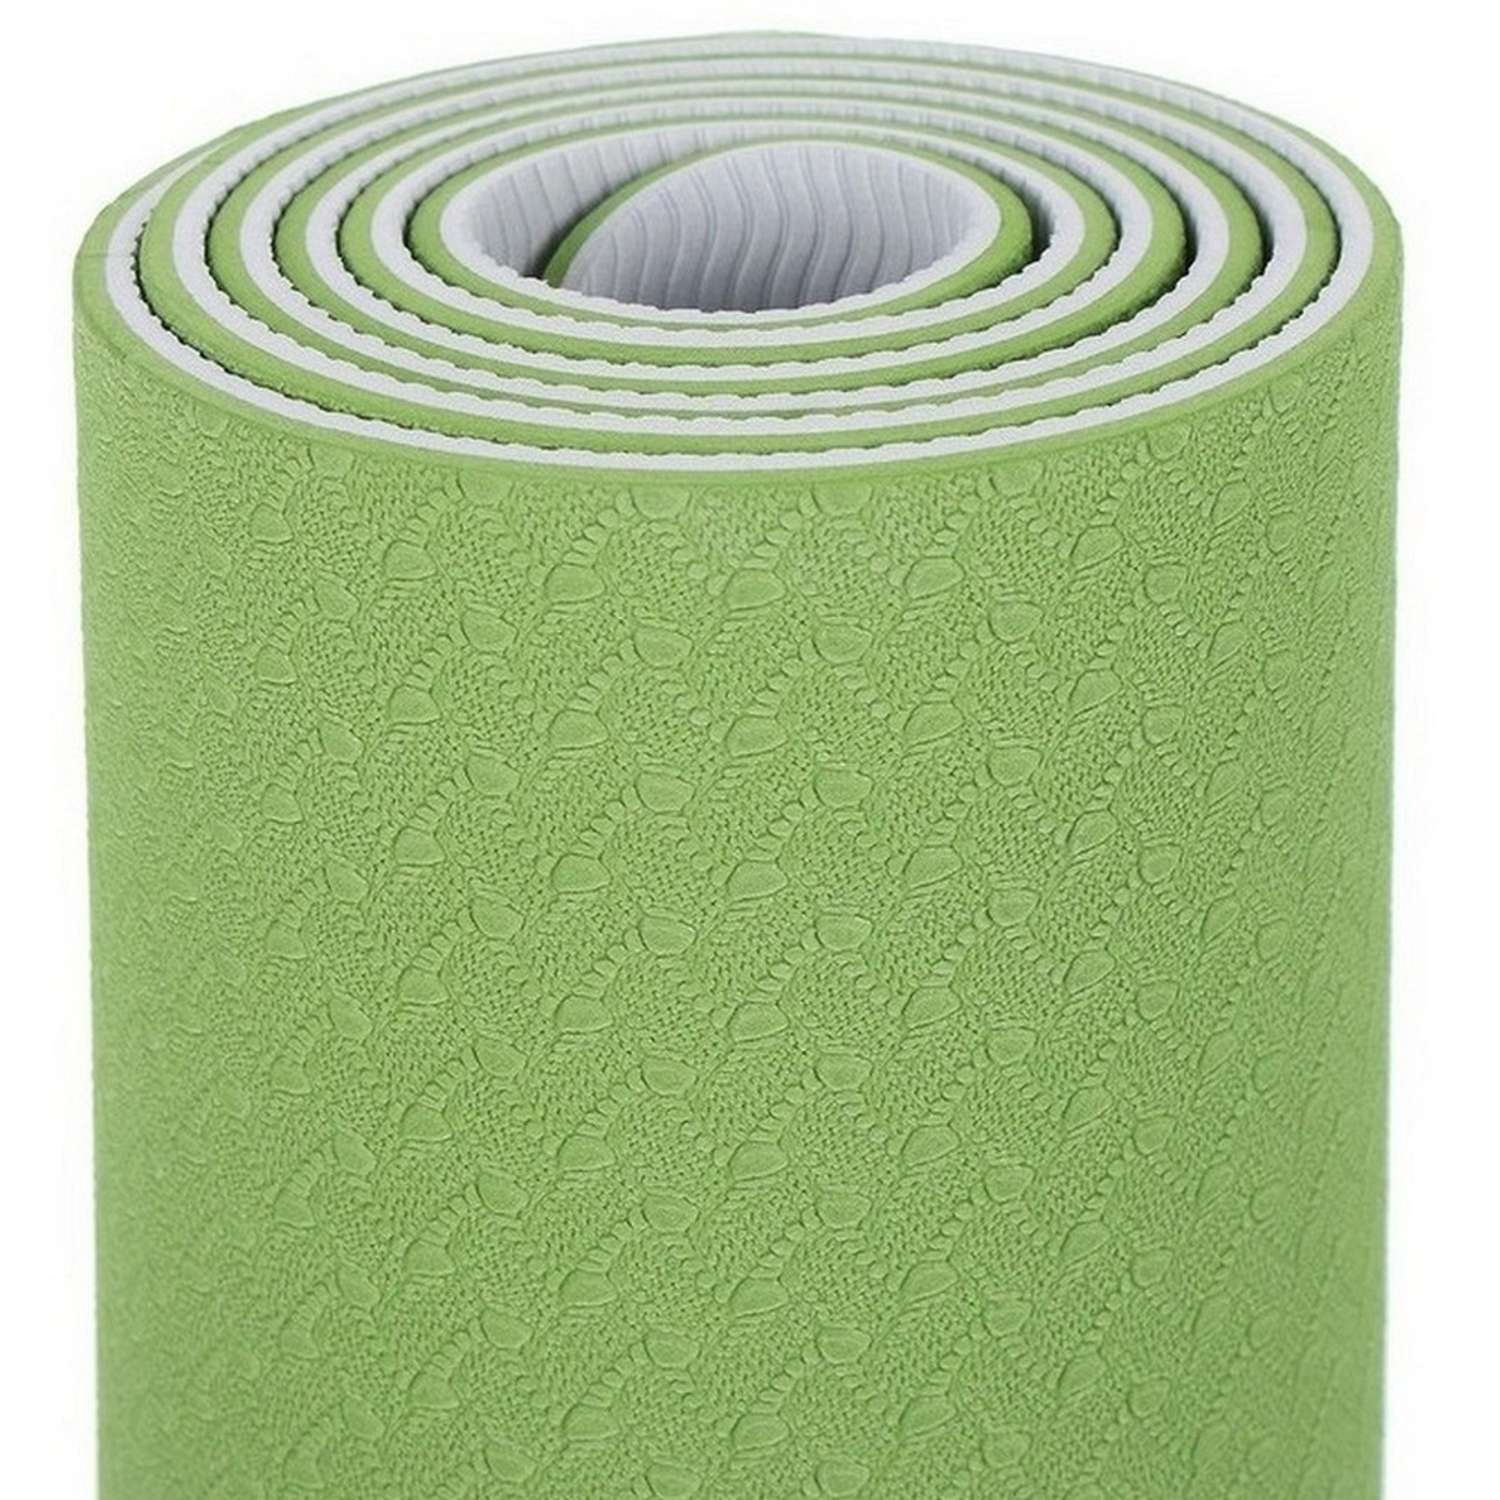 Коврик для йоги STRONG BODY двухсторонний серо-зеленый 183см х 61см х 0.6см - фото 4